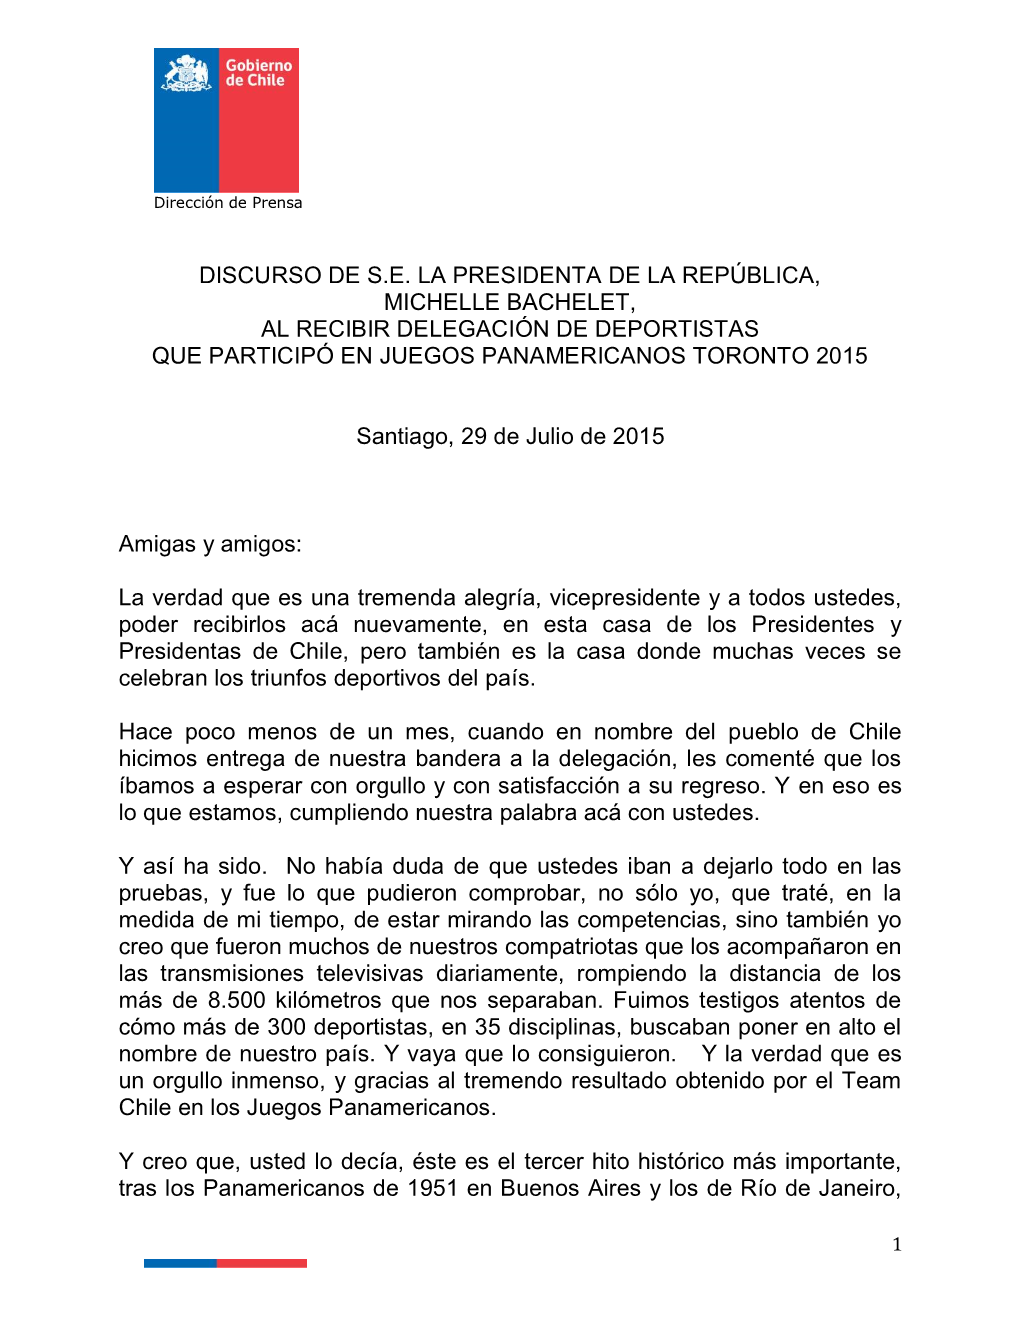 Discurso De S.E. La Presidenta De La República, Michelle Bachelet, Al Recibir Delegación De Deportistas Que Participó En Juegos Panamericanos Toronto 2015